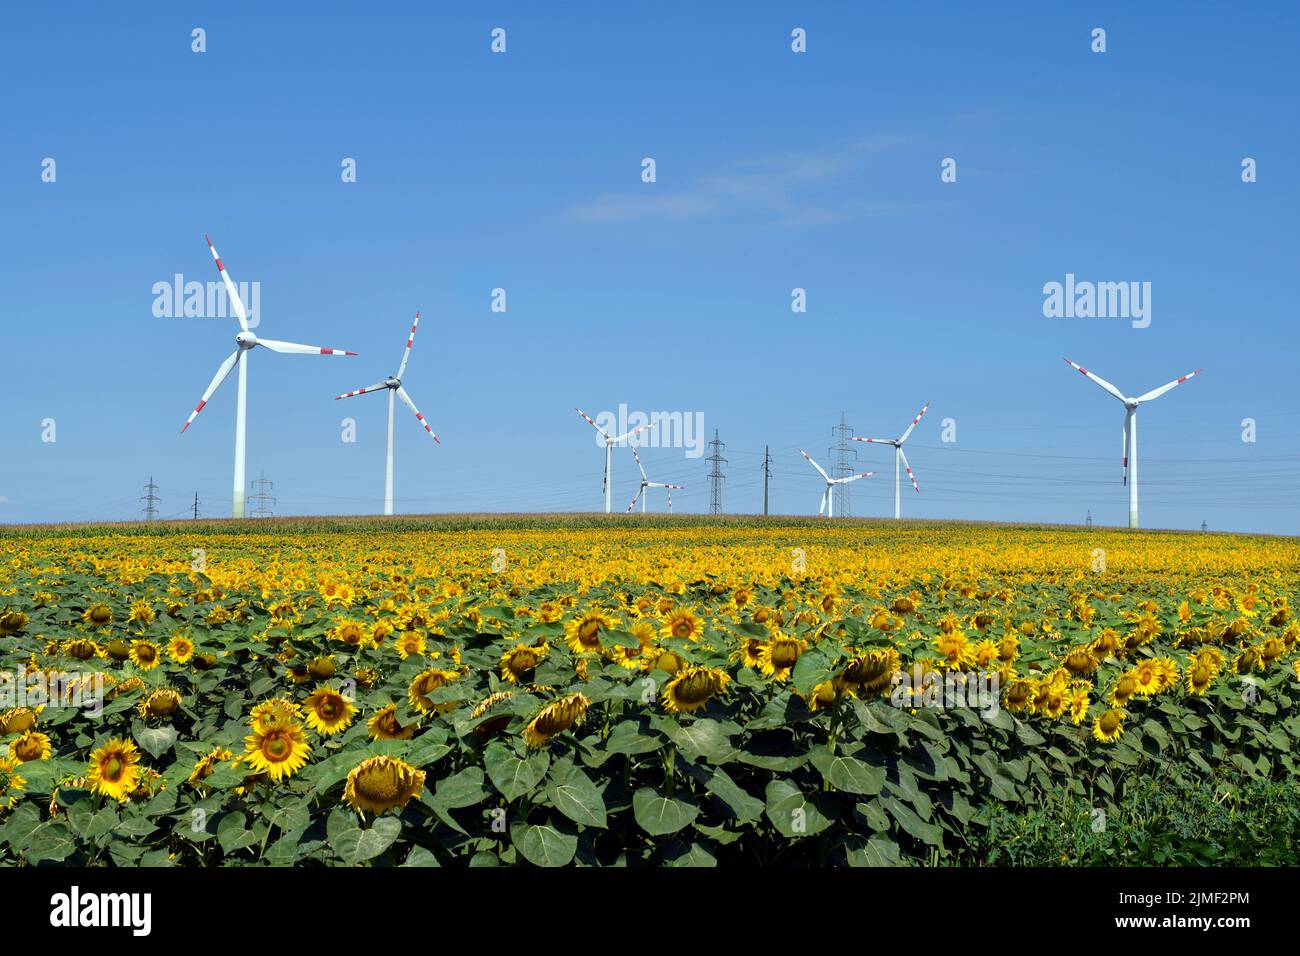 Autriche, éoliennes dans le champ de tournesol, une alternative à la protection de l'environnement et à la production d'énergie Banque D'Images